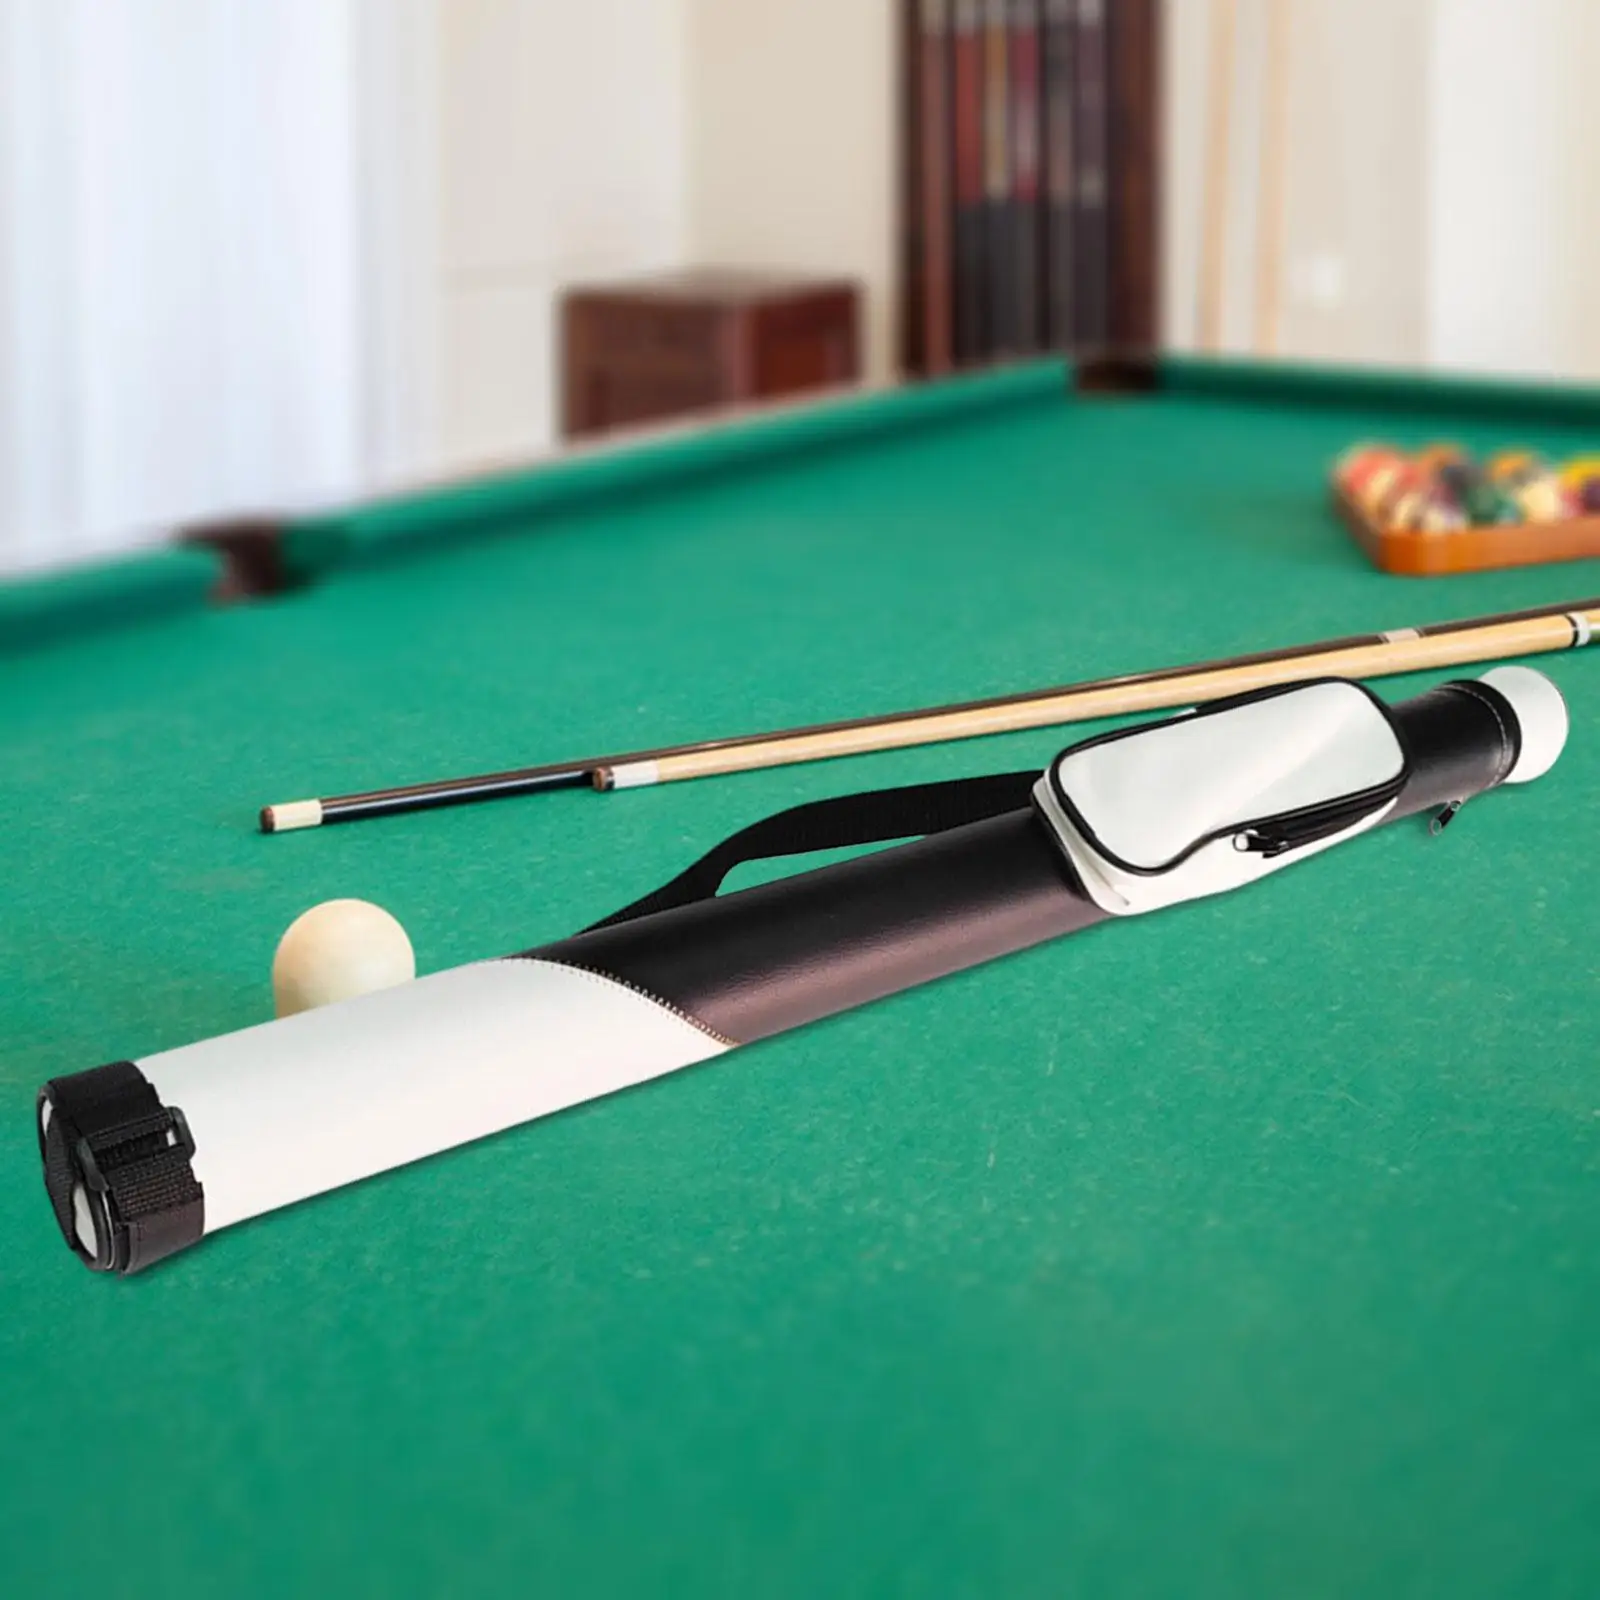 Pool Cue Case Billiard Pool Cue Bag Protector Lightweight Billiard Pool Cue Stick Carrying Bag for Outdoor Snooker Accessories